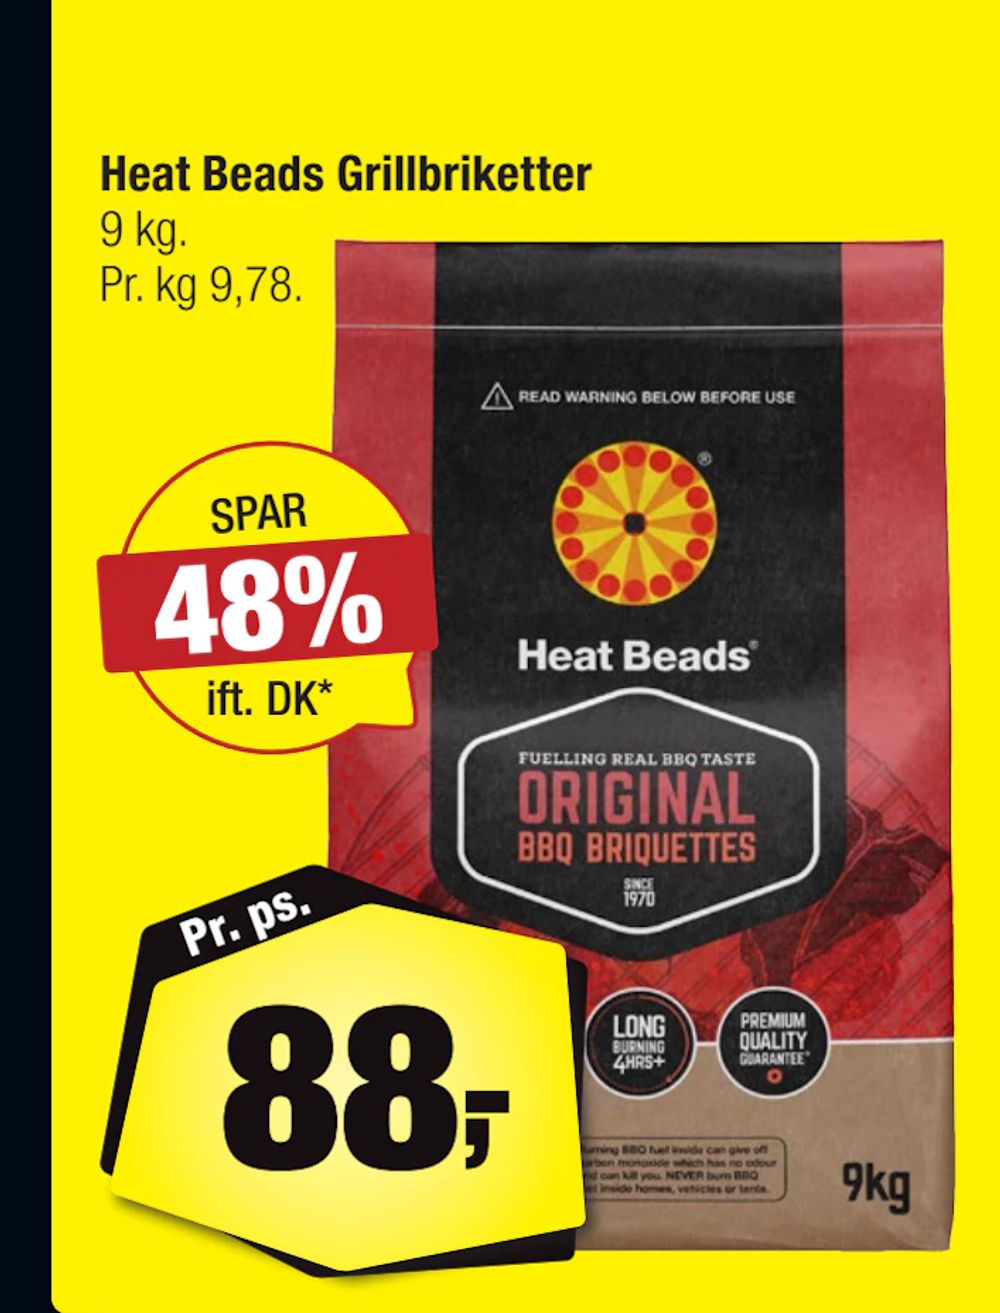 Tilbud på Heat Beads Grillbriketter fra Calle til 88 kr.